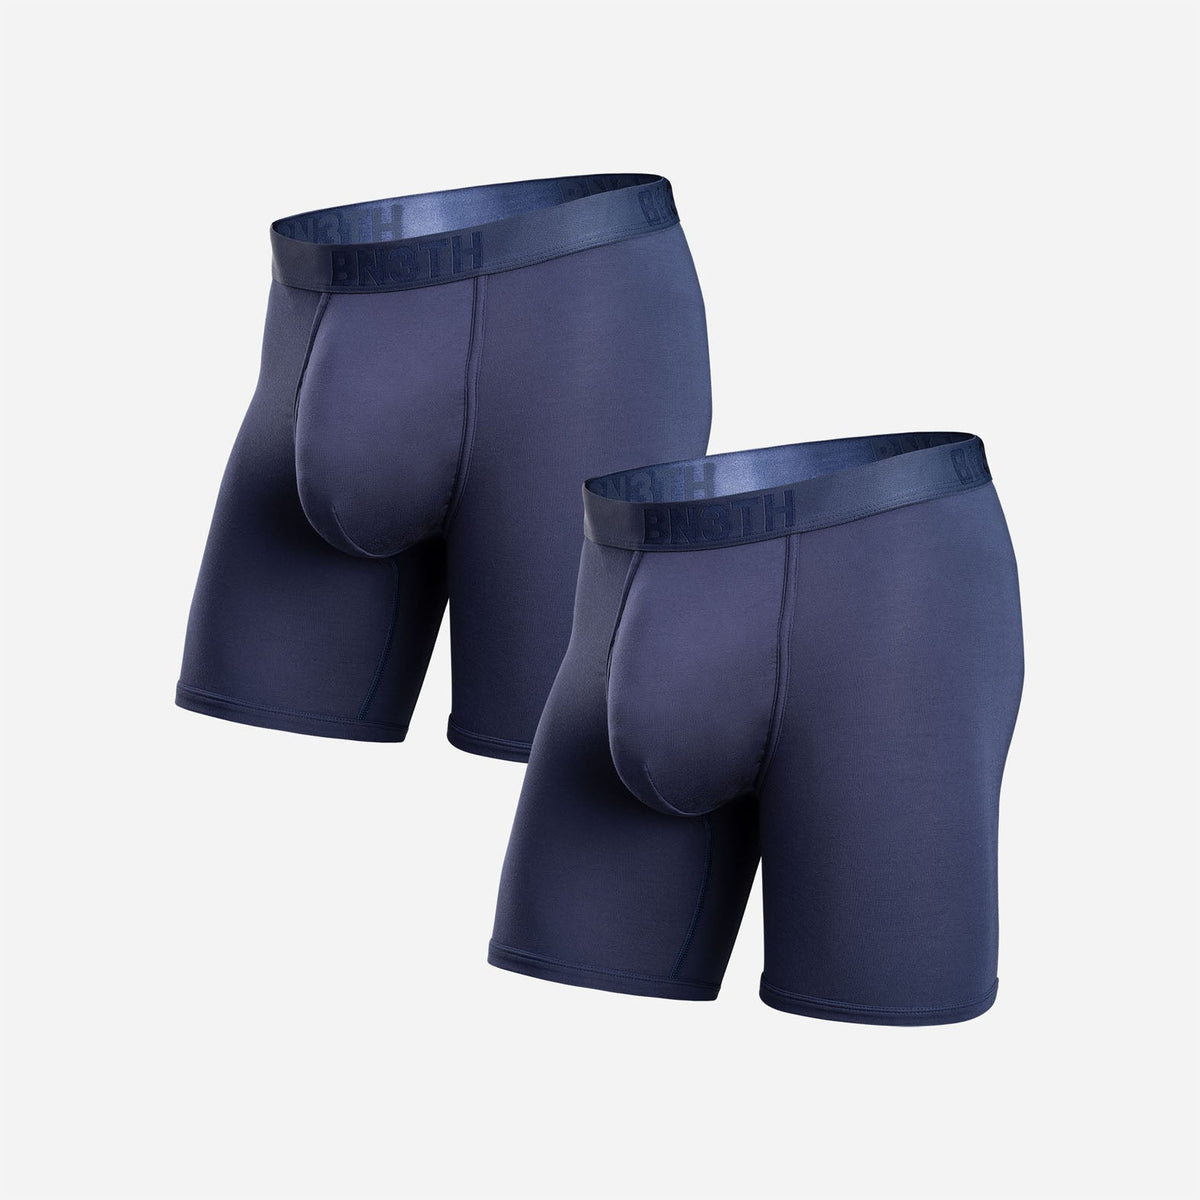 RB Design Men's Underwear Boxer Brief Ocean Blue / PREMIUM QUALITY